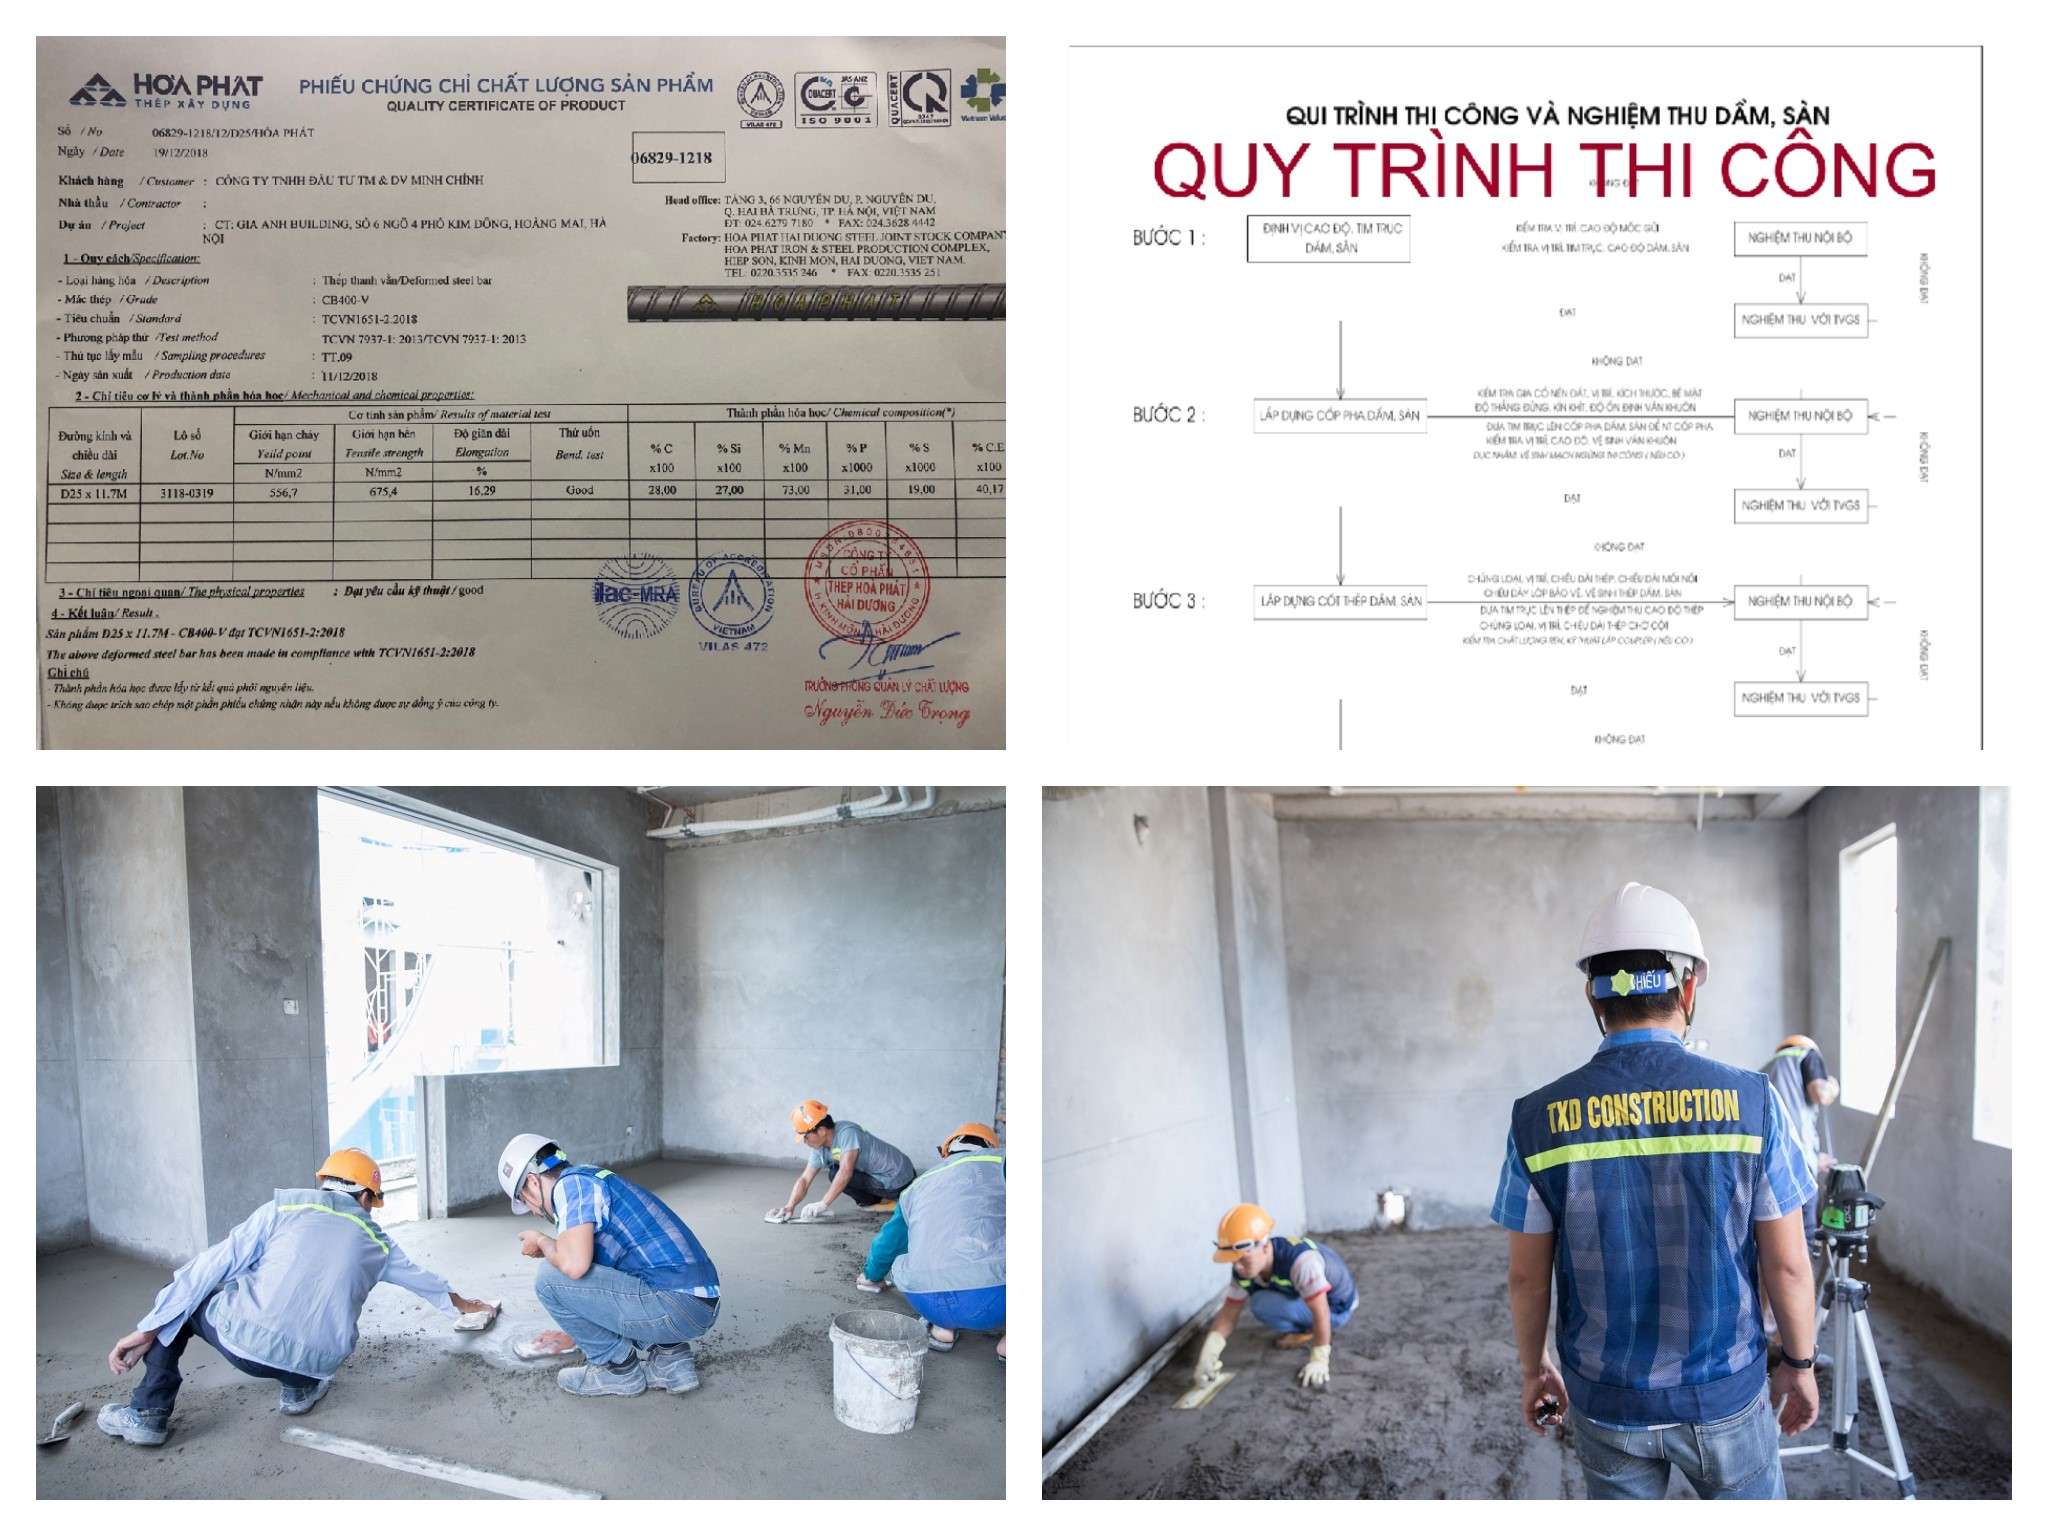 Có nên sử dụng dịch vụ xây nhà trọn gói giá rẻ tại Hà Nội